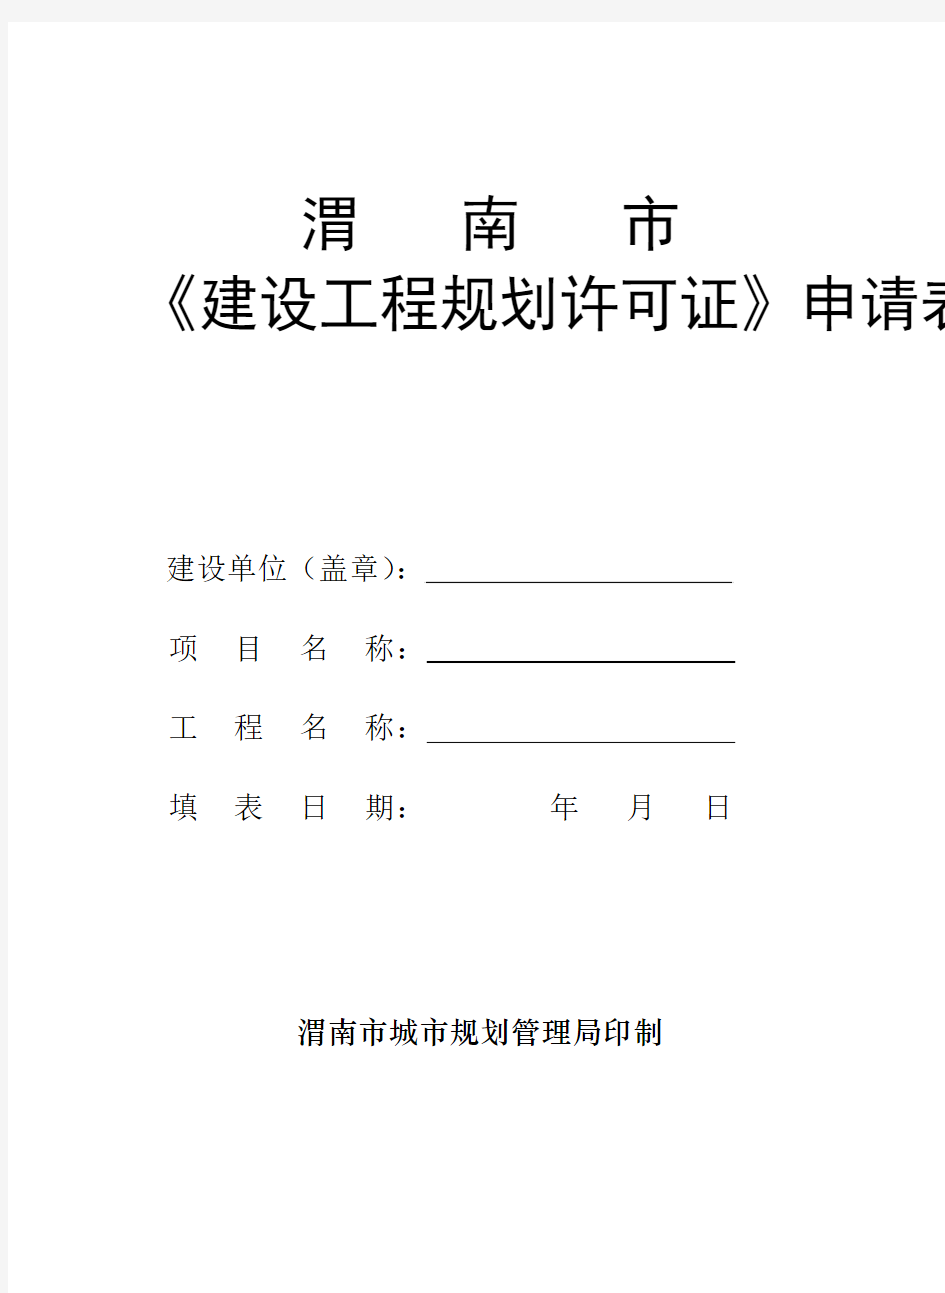 渭南市《建设工程规划许可证》申请表(一)